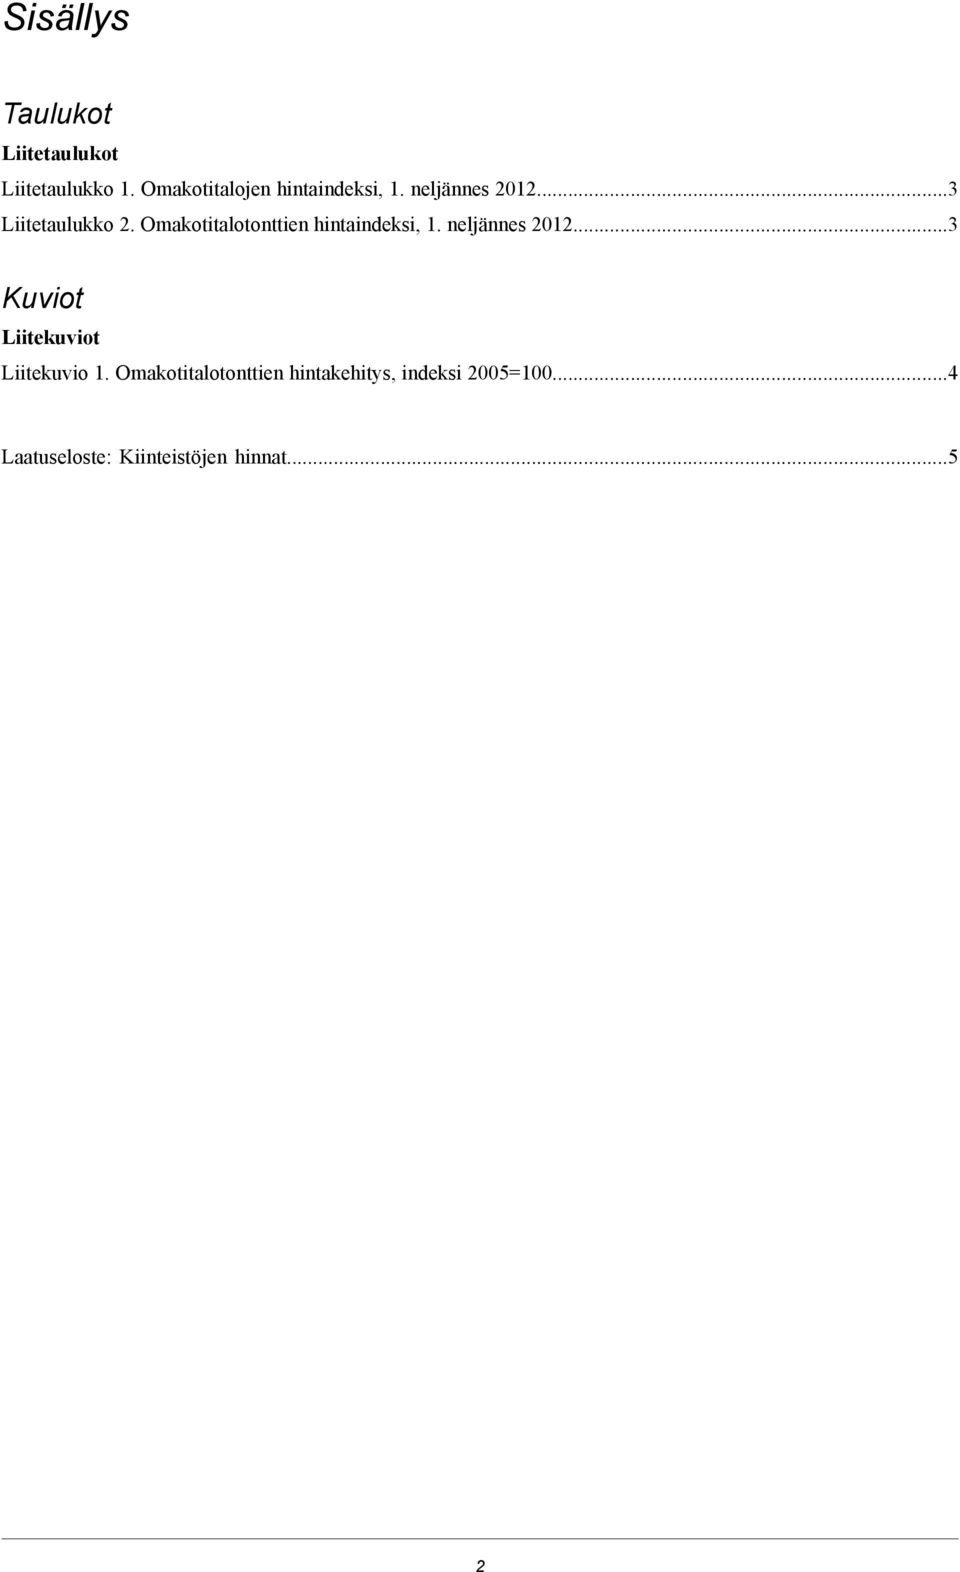 Omakotitalotonttien hintaindeksi, 1. neljännes 2012.